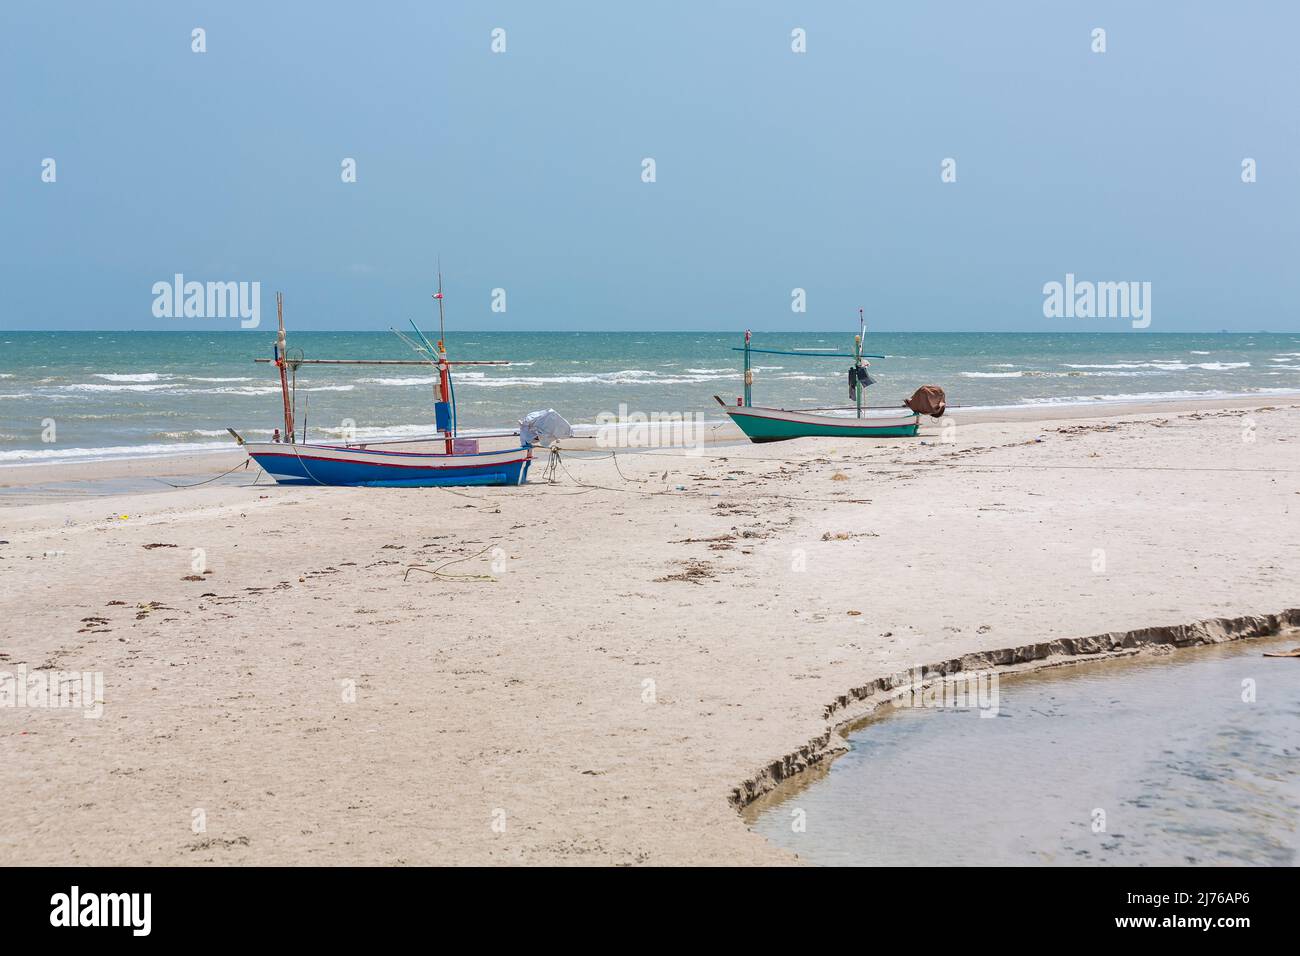 Bateaux de pêche sur la plage, complexe hôtelier Dusit Thani, Hua Hin, province de Prachuap Khiri Khan, Thaïlande, Golfe de Thaïlande, Asie Banque D'Images